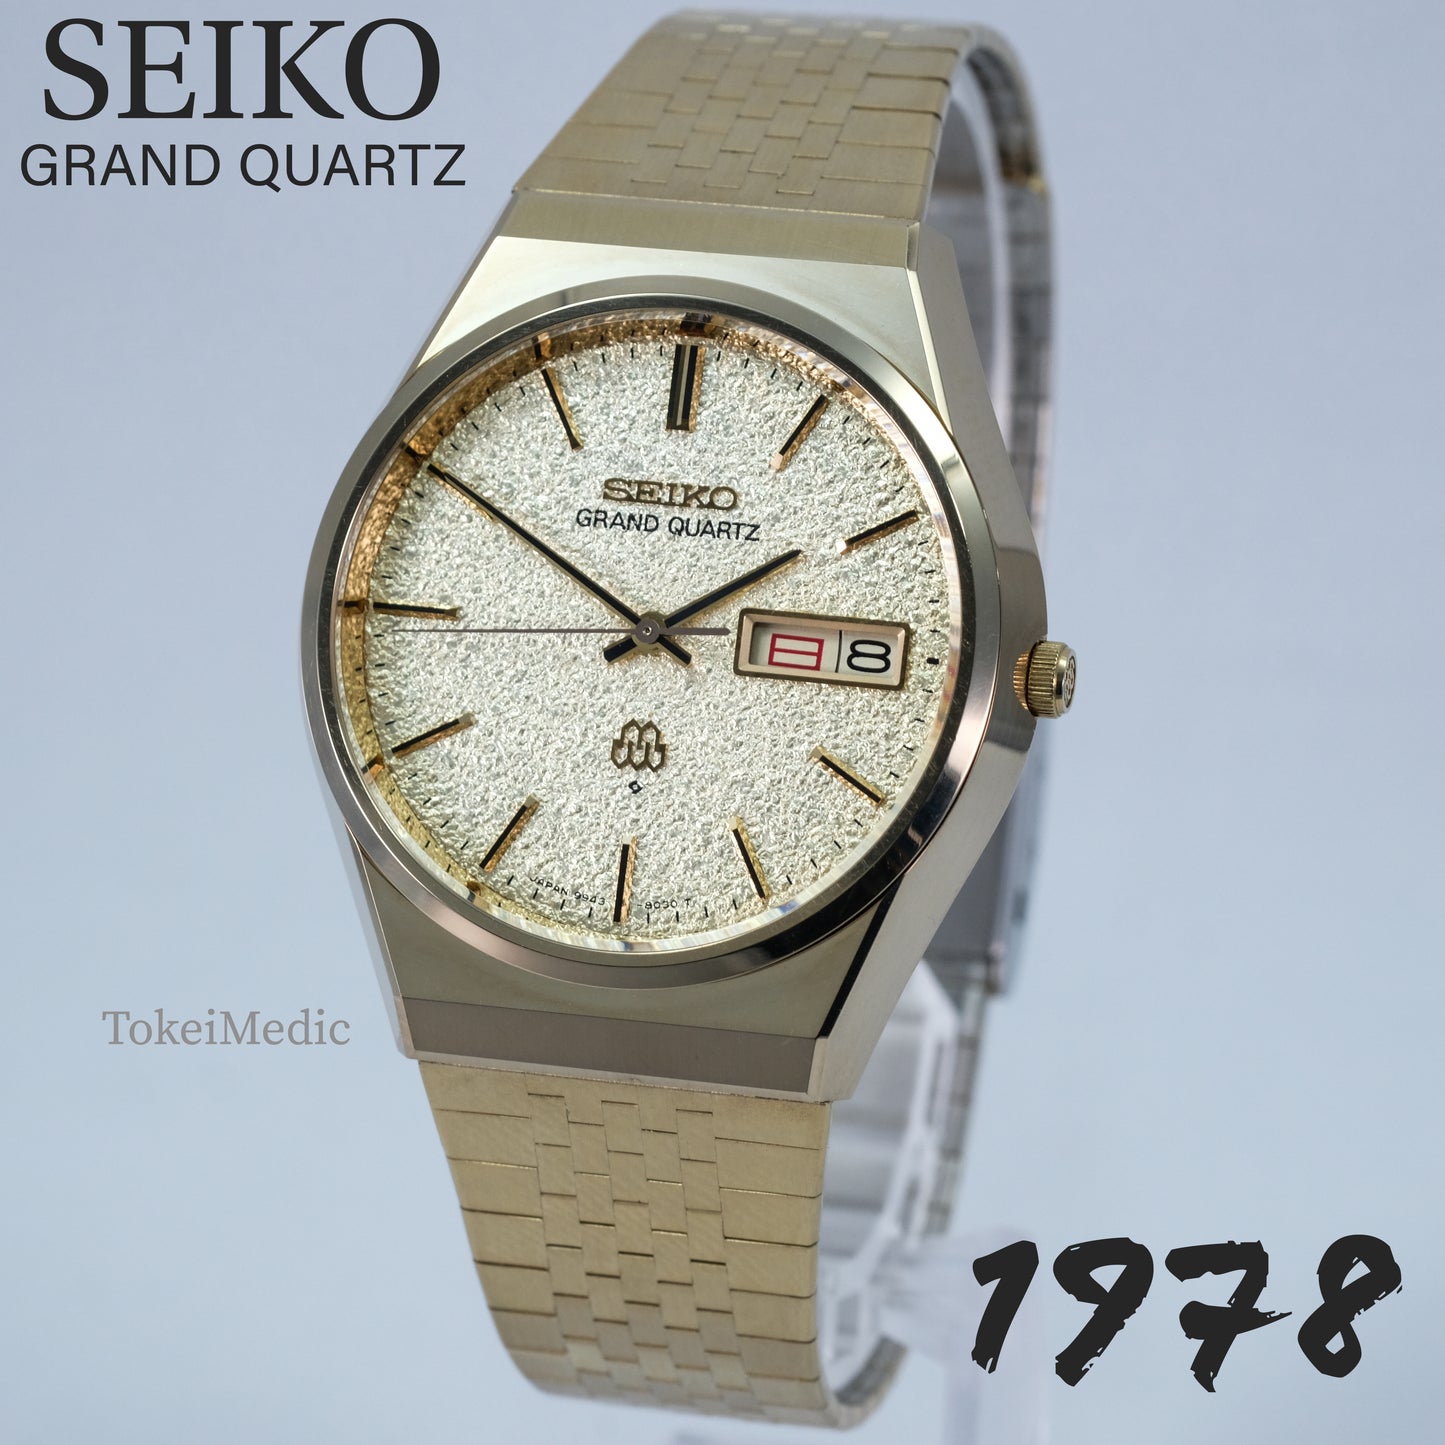 1978 Seiko Grand Quartz HGP 9943-8020